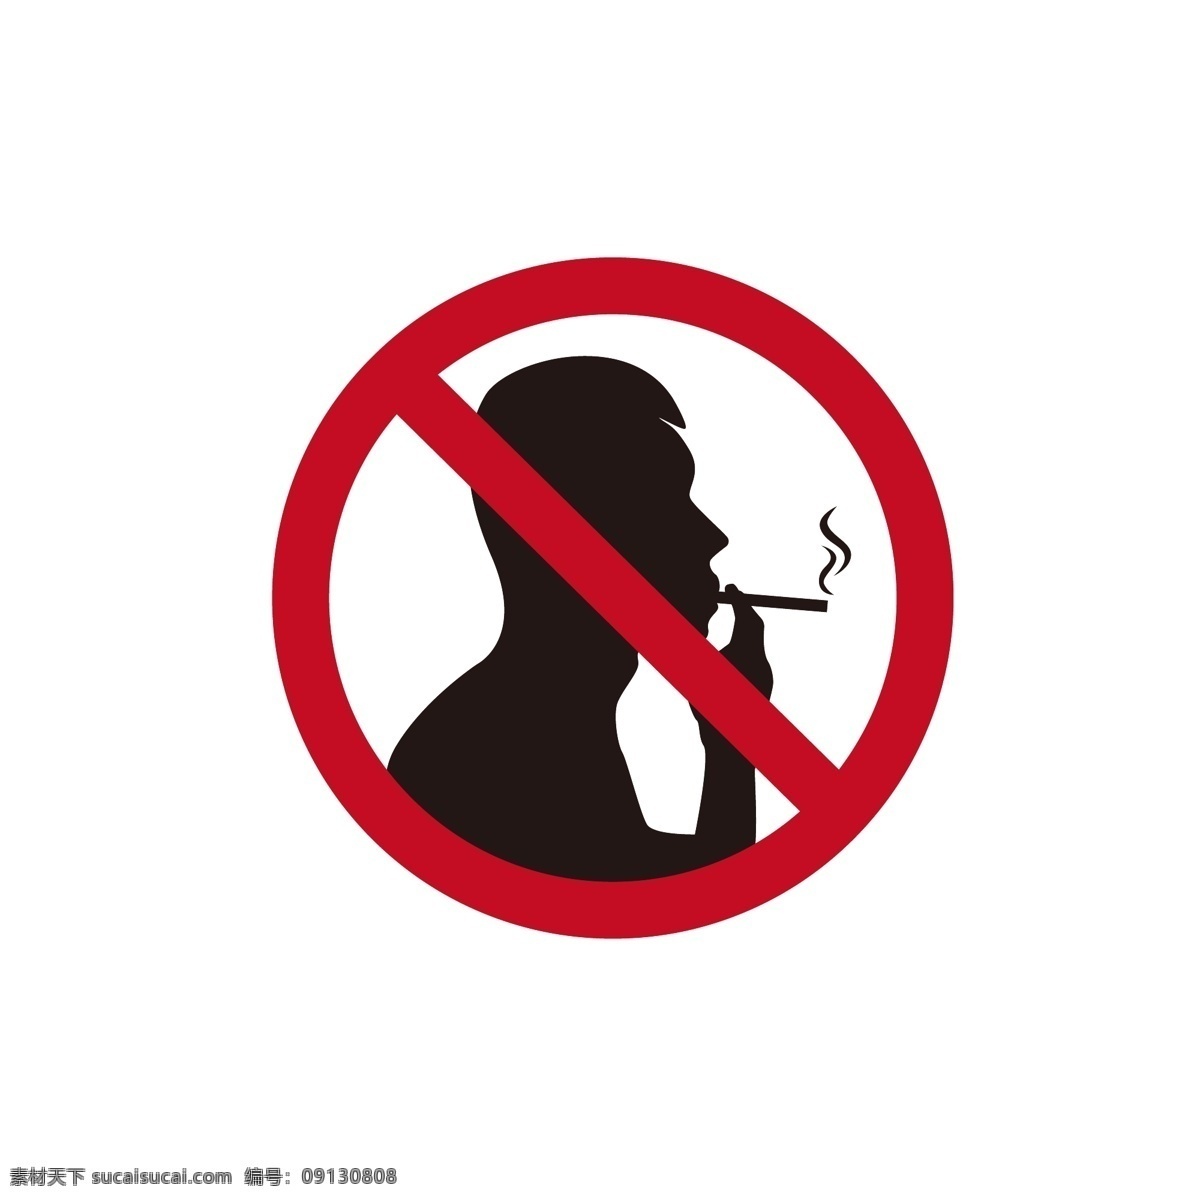 禁止 吸烟 标志设计 禁止吸烟 抽烟 禁止图标 吸烟人物 吸烟标志